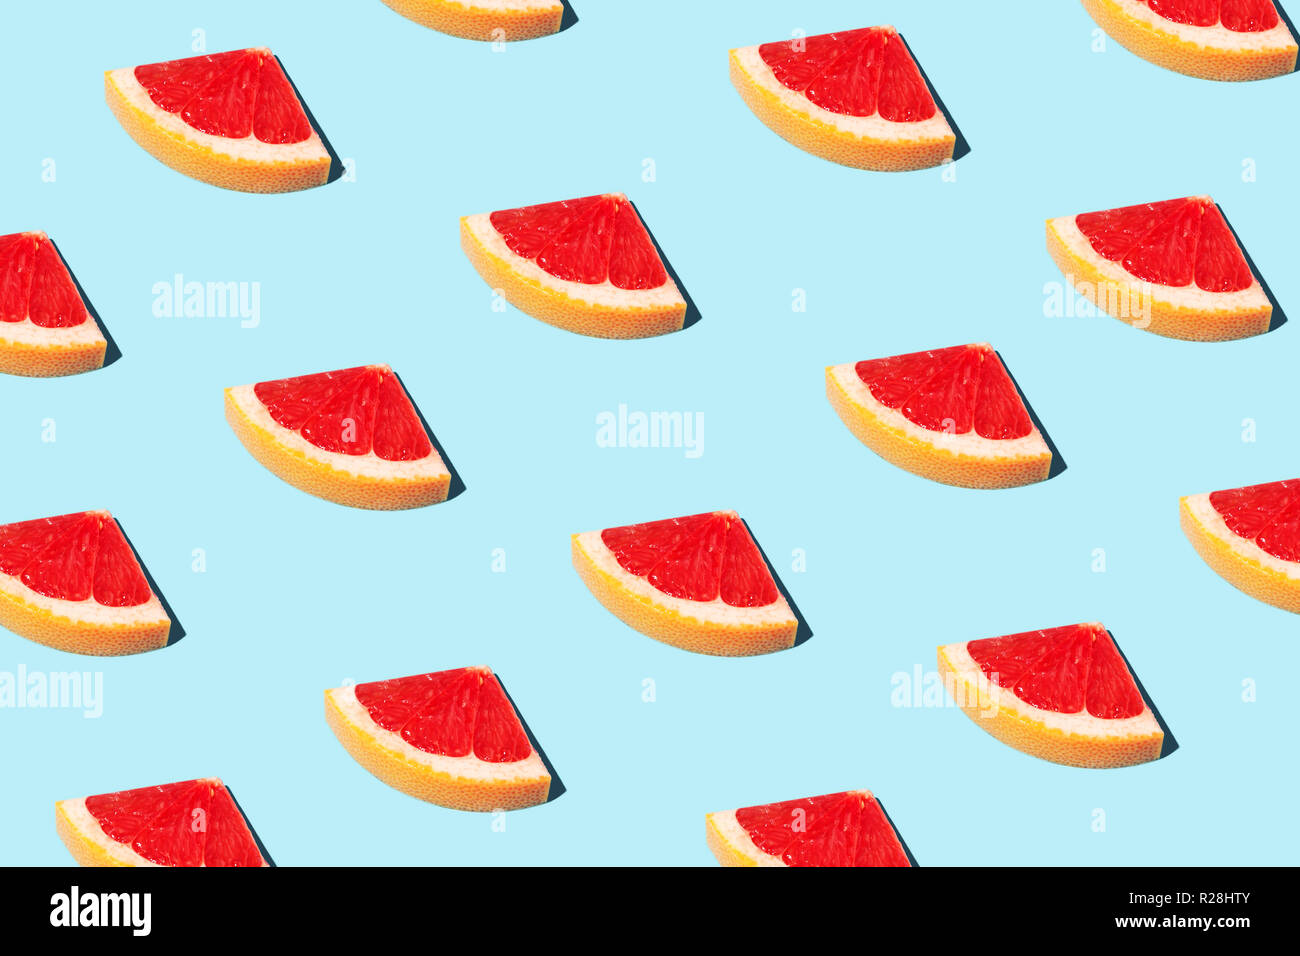 Bellissimo modello alimentare, alimenti fashion concept con la metà delle fette di pompelmo su sfondo blu. Foto Stock